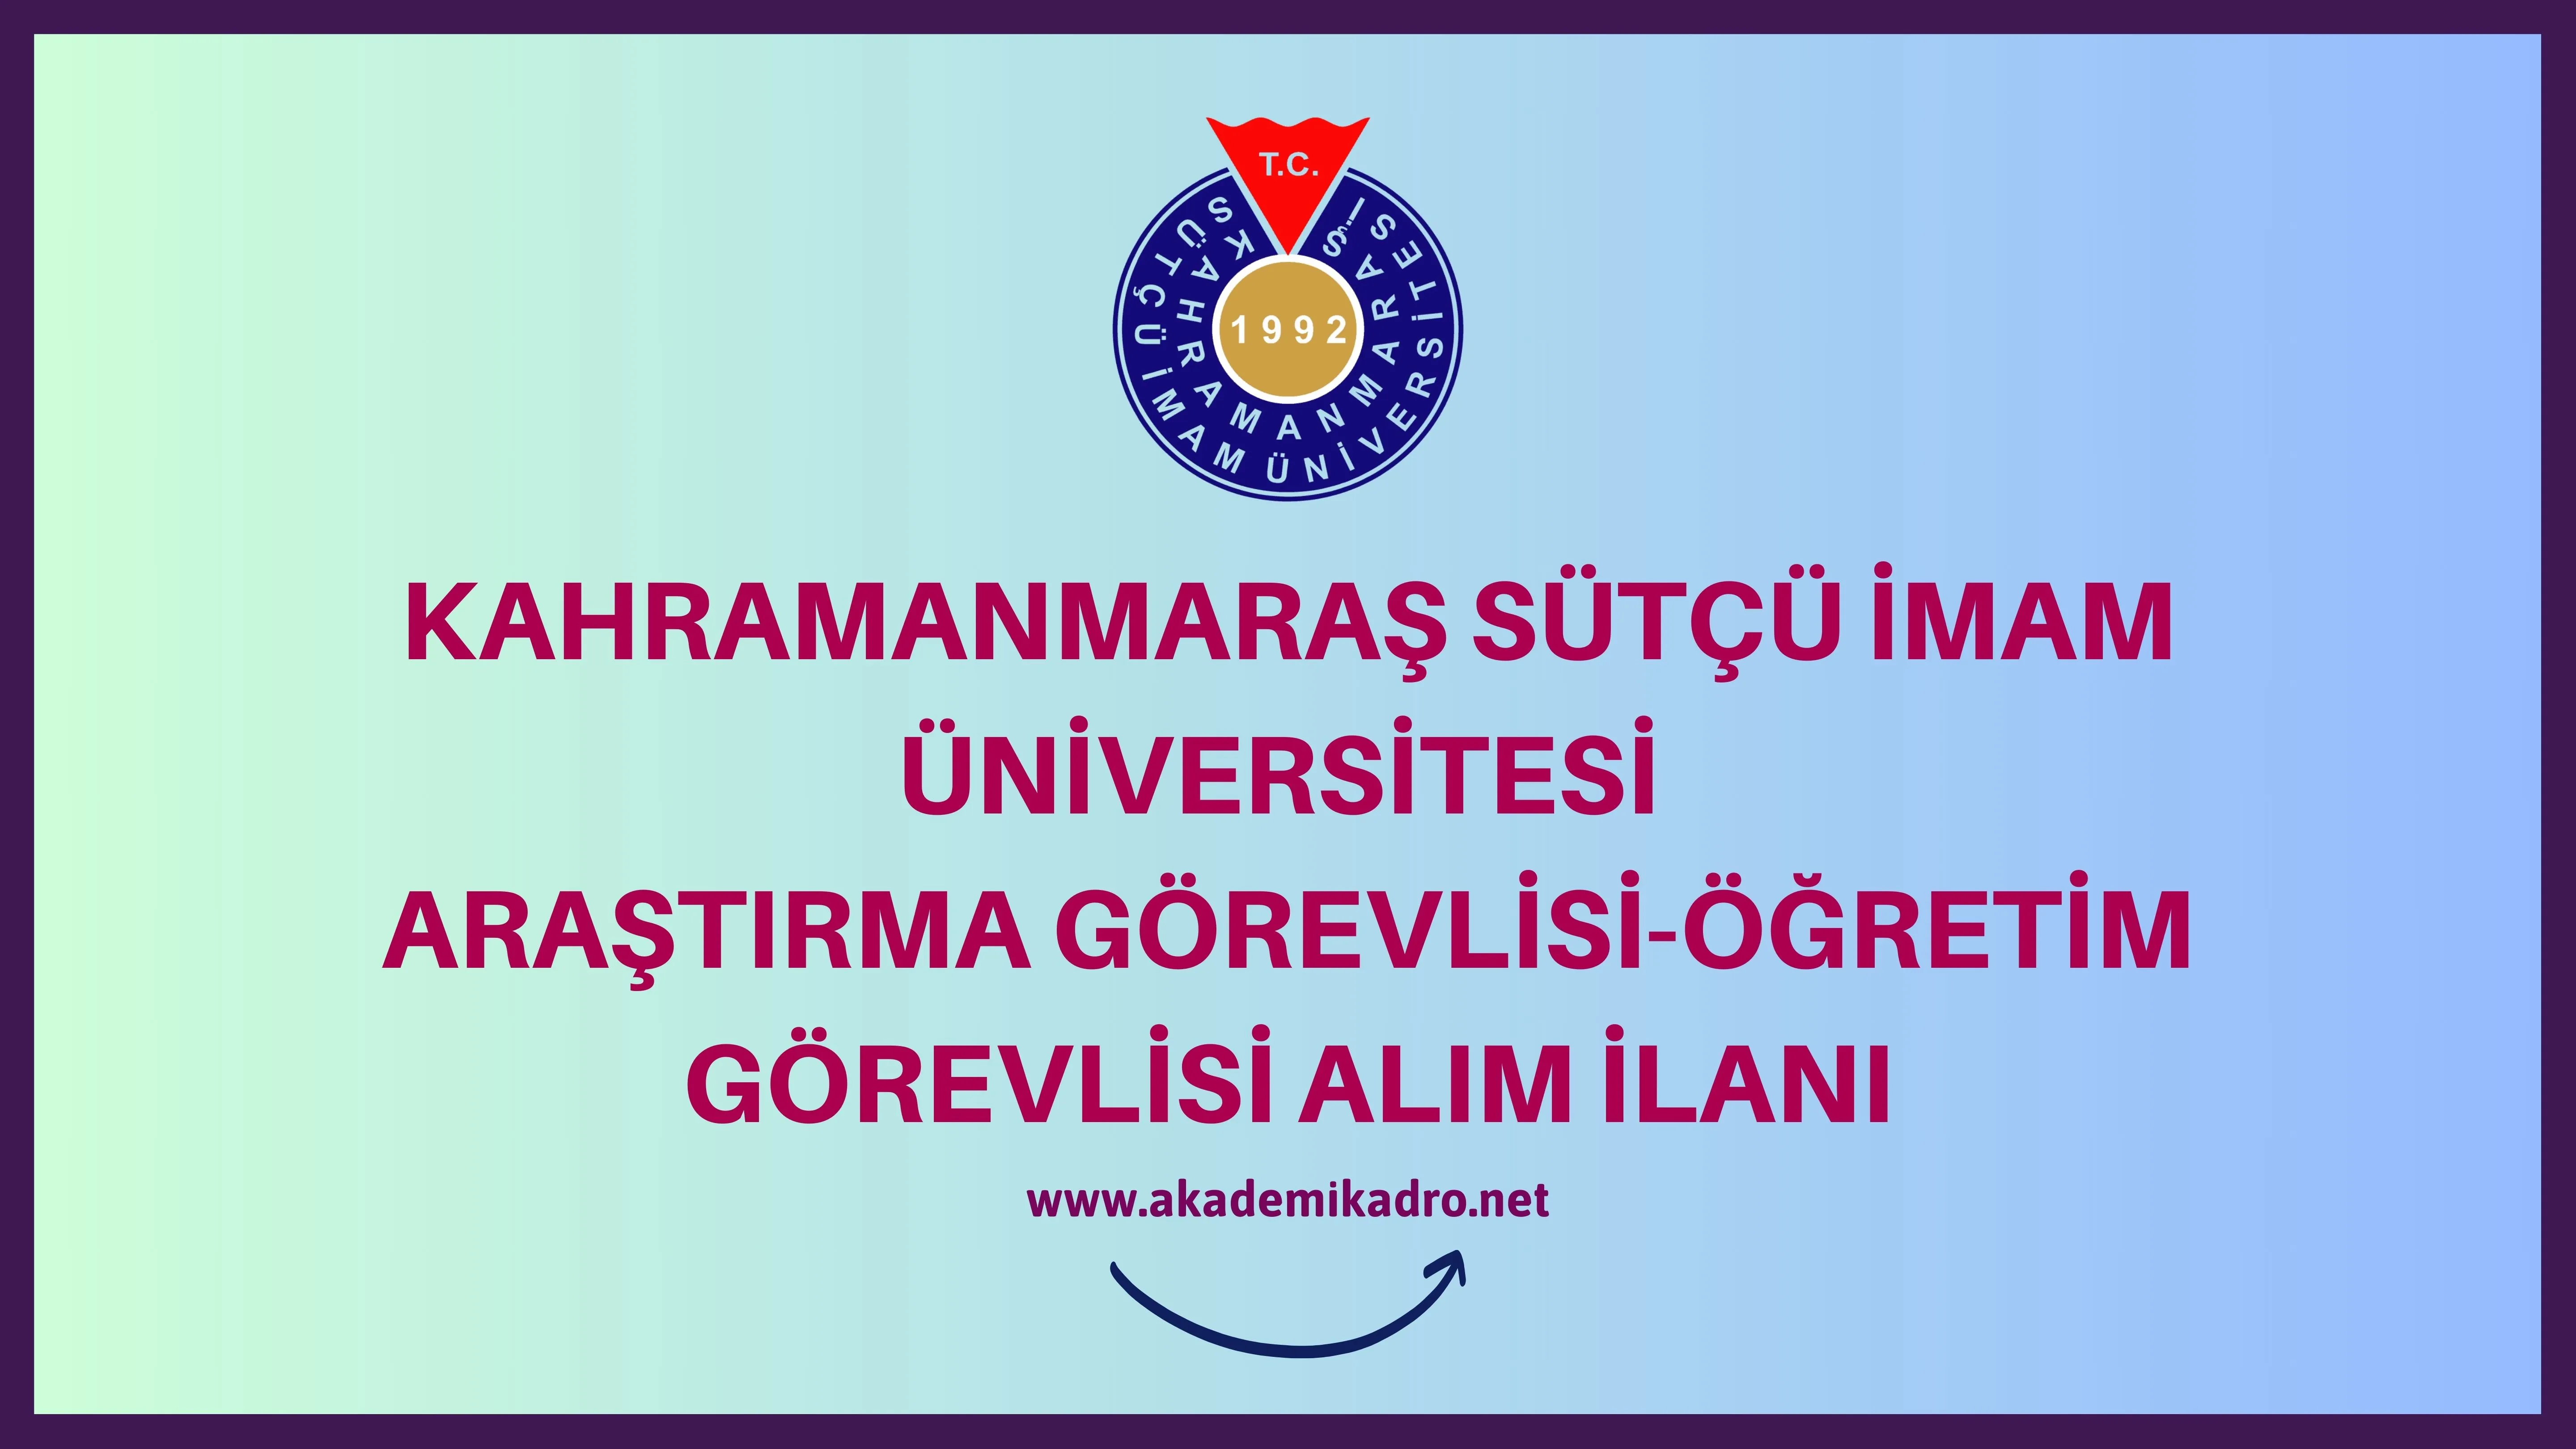 Kahramanmaraş Sütçü İmam Üniversitesi 10 Öğretim görevlisi ve 8 Araştırma görevlisi alacak.